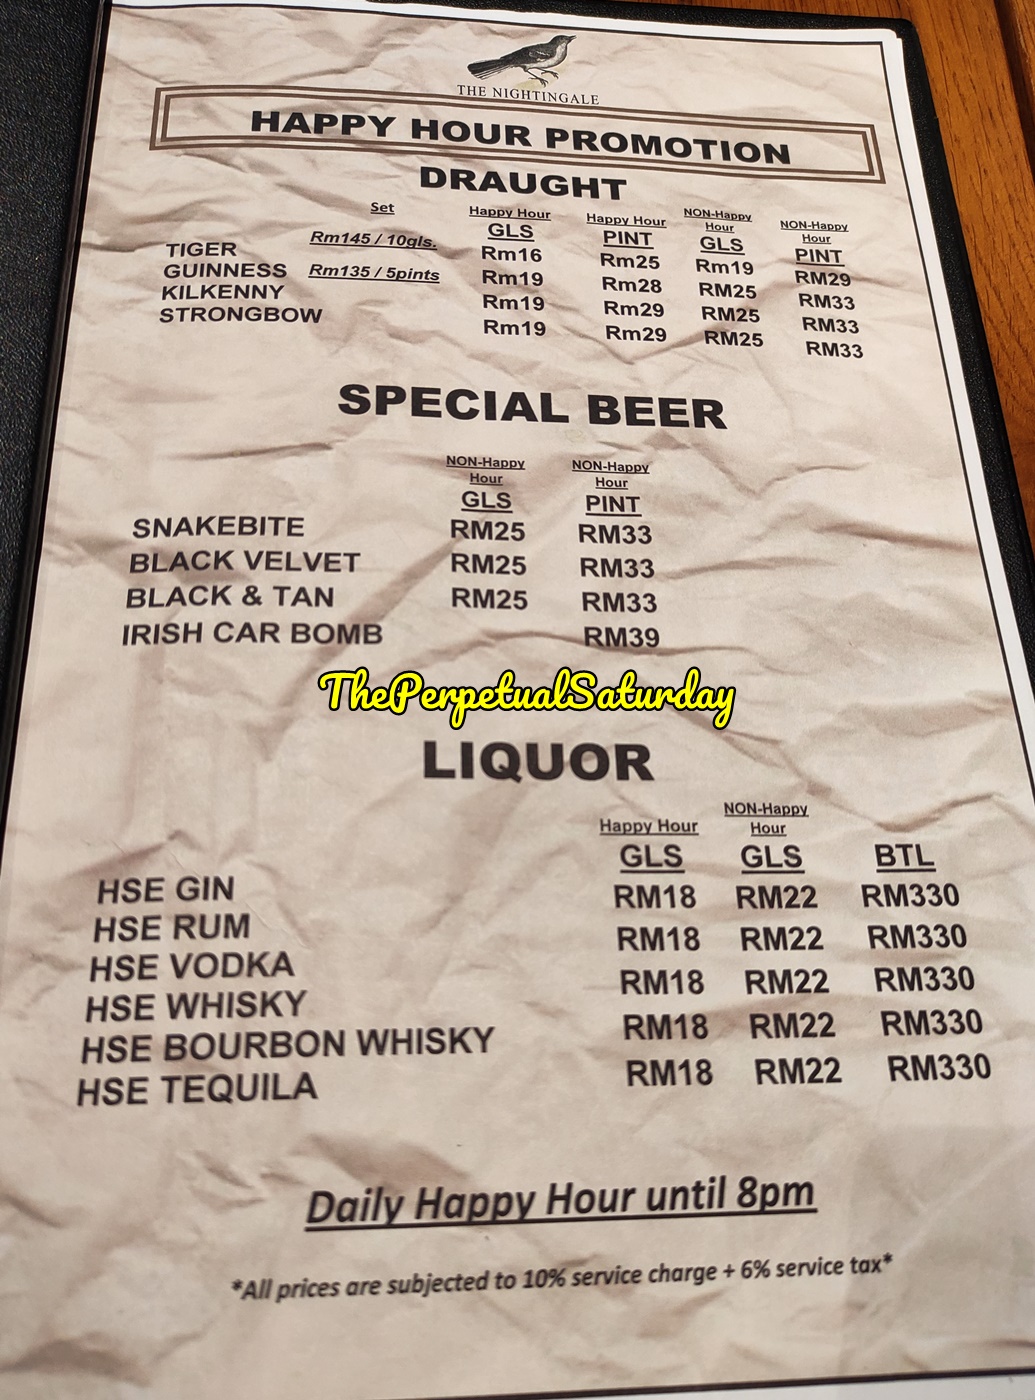 Spitalfield's Beer menu